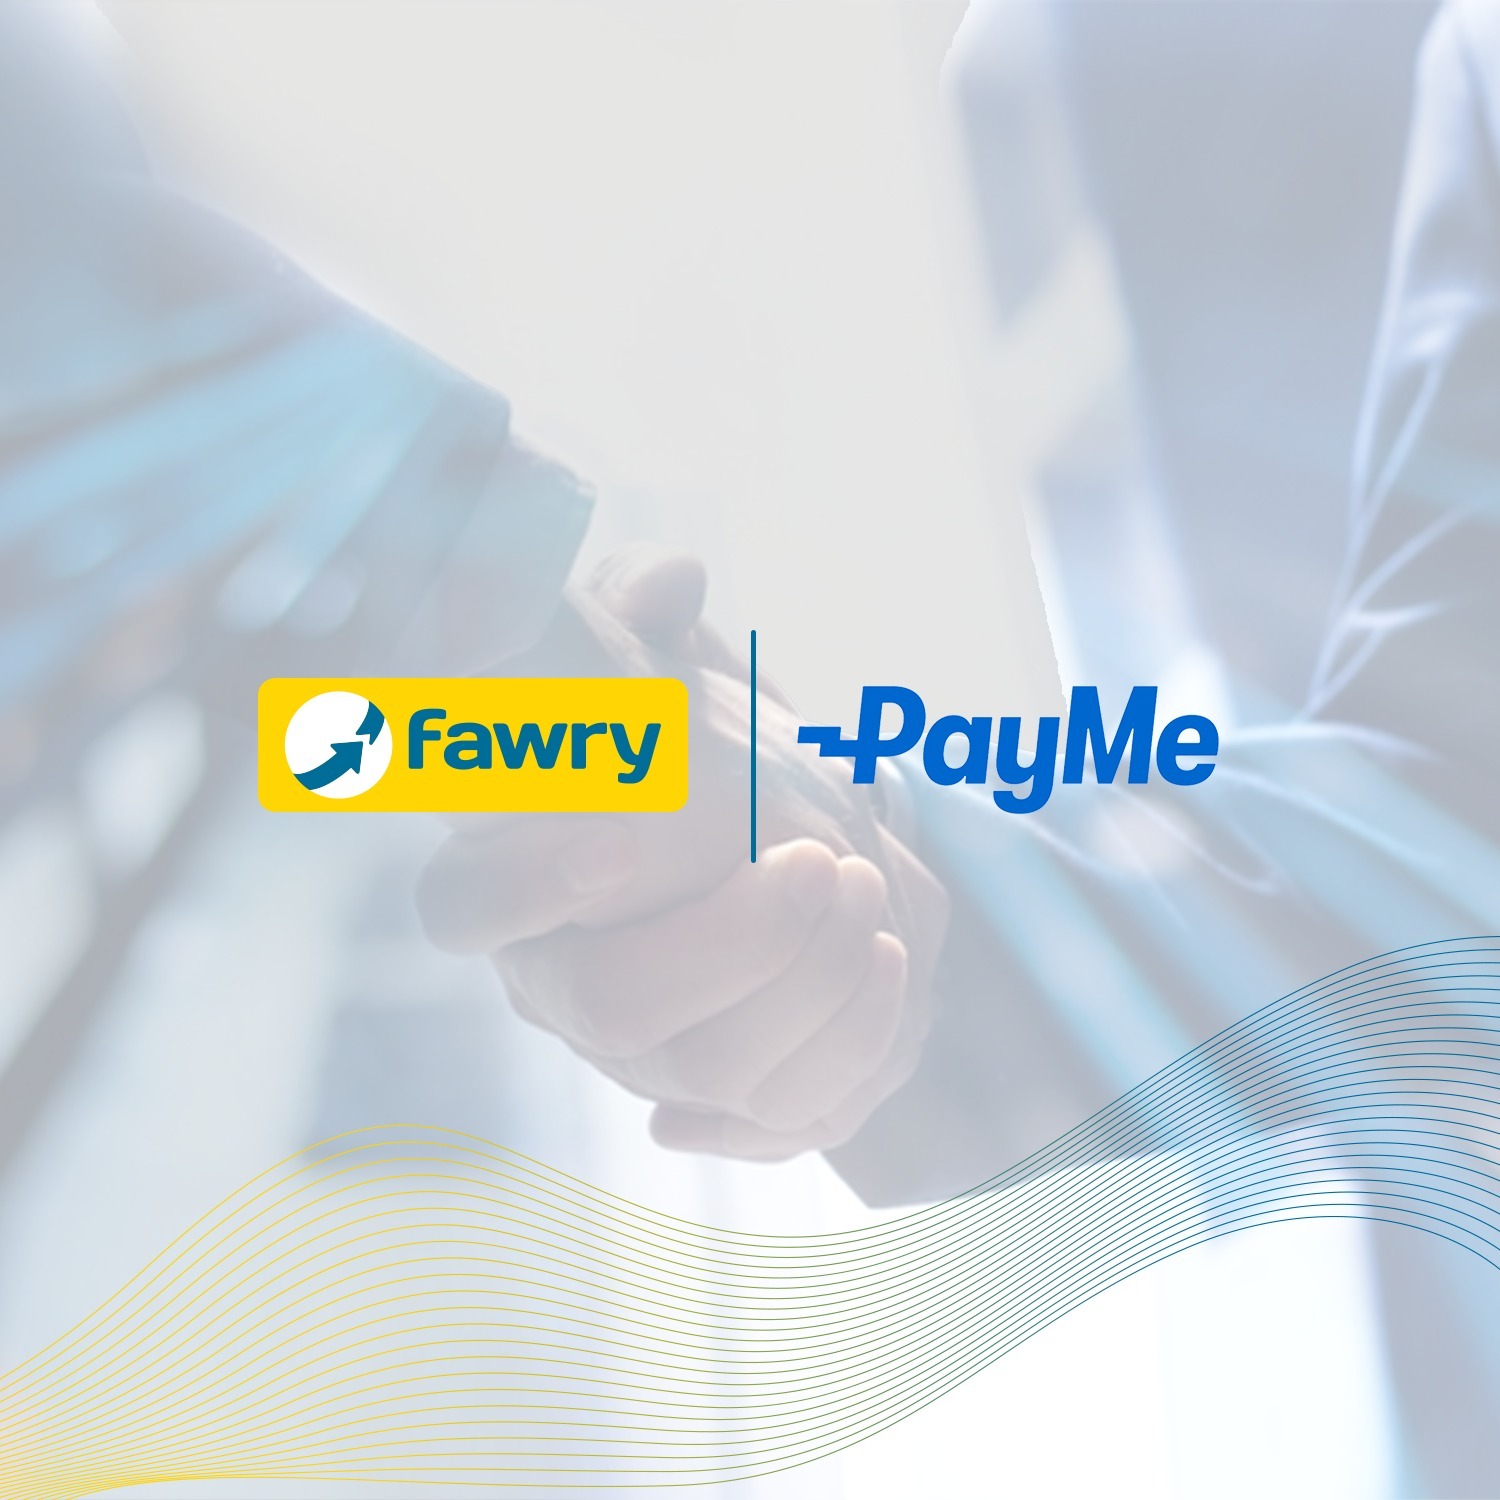 فوري تتعاقد مع پاي مي- PayMe لإتاحة خدمات الدفع الإلكتروني للمصريين المغتربين